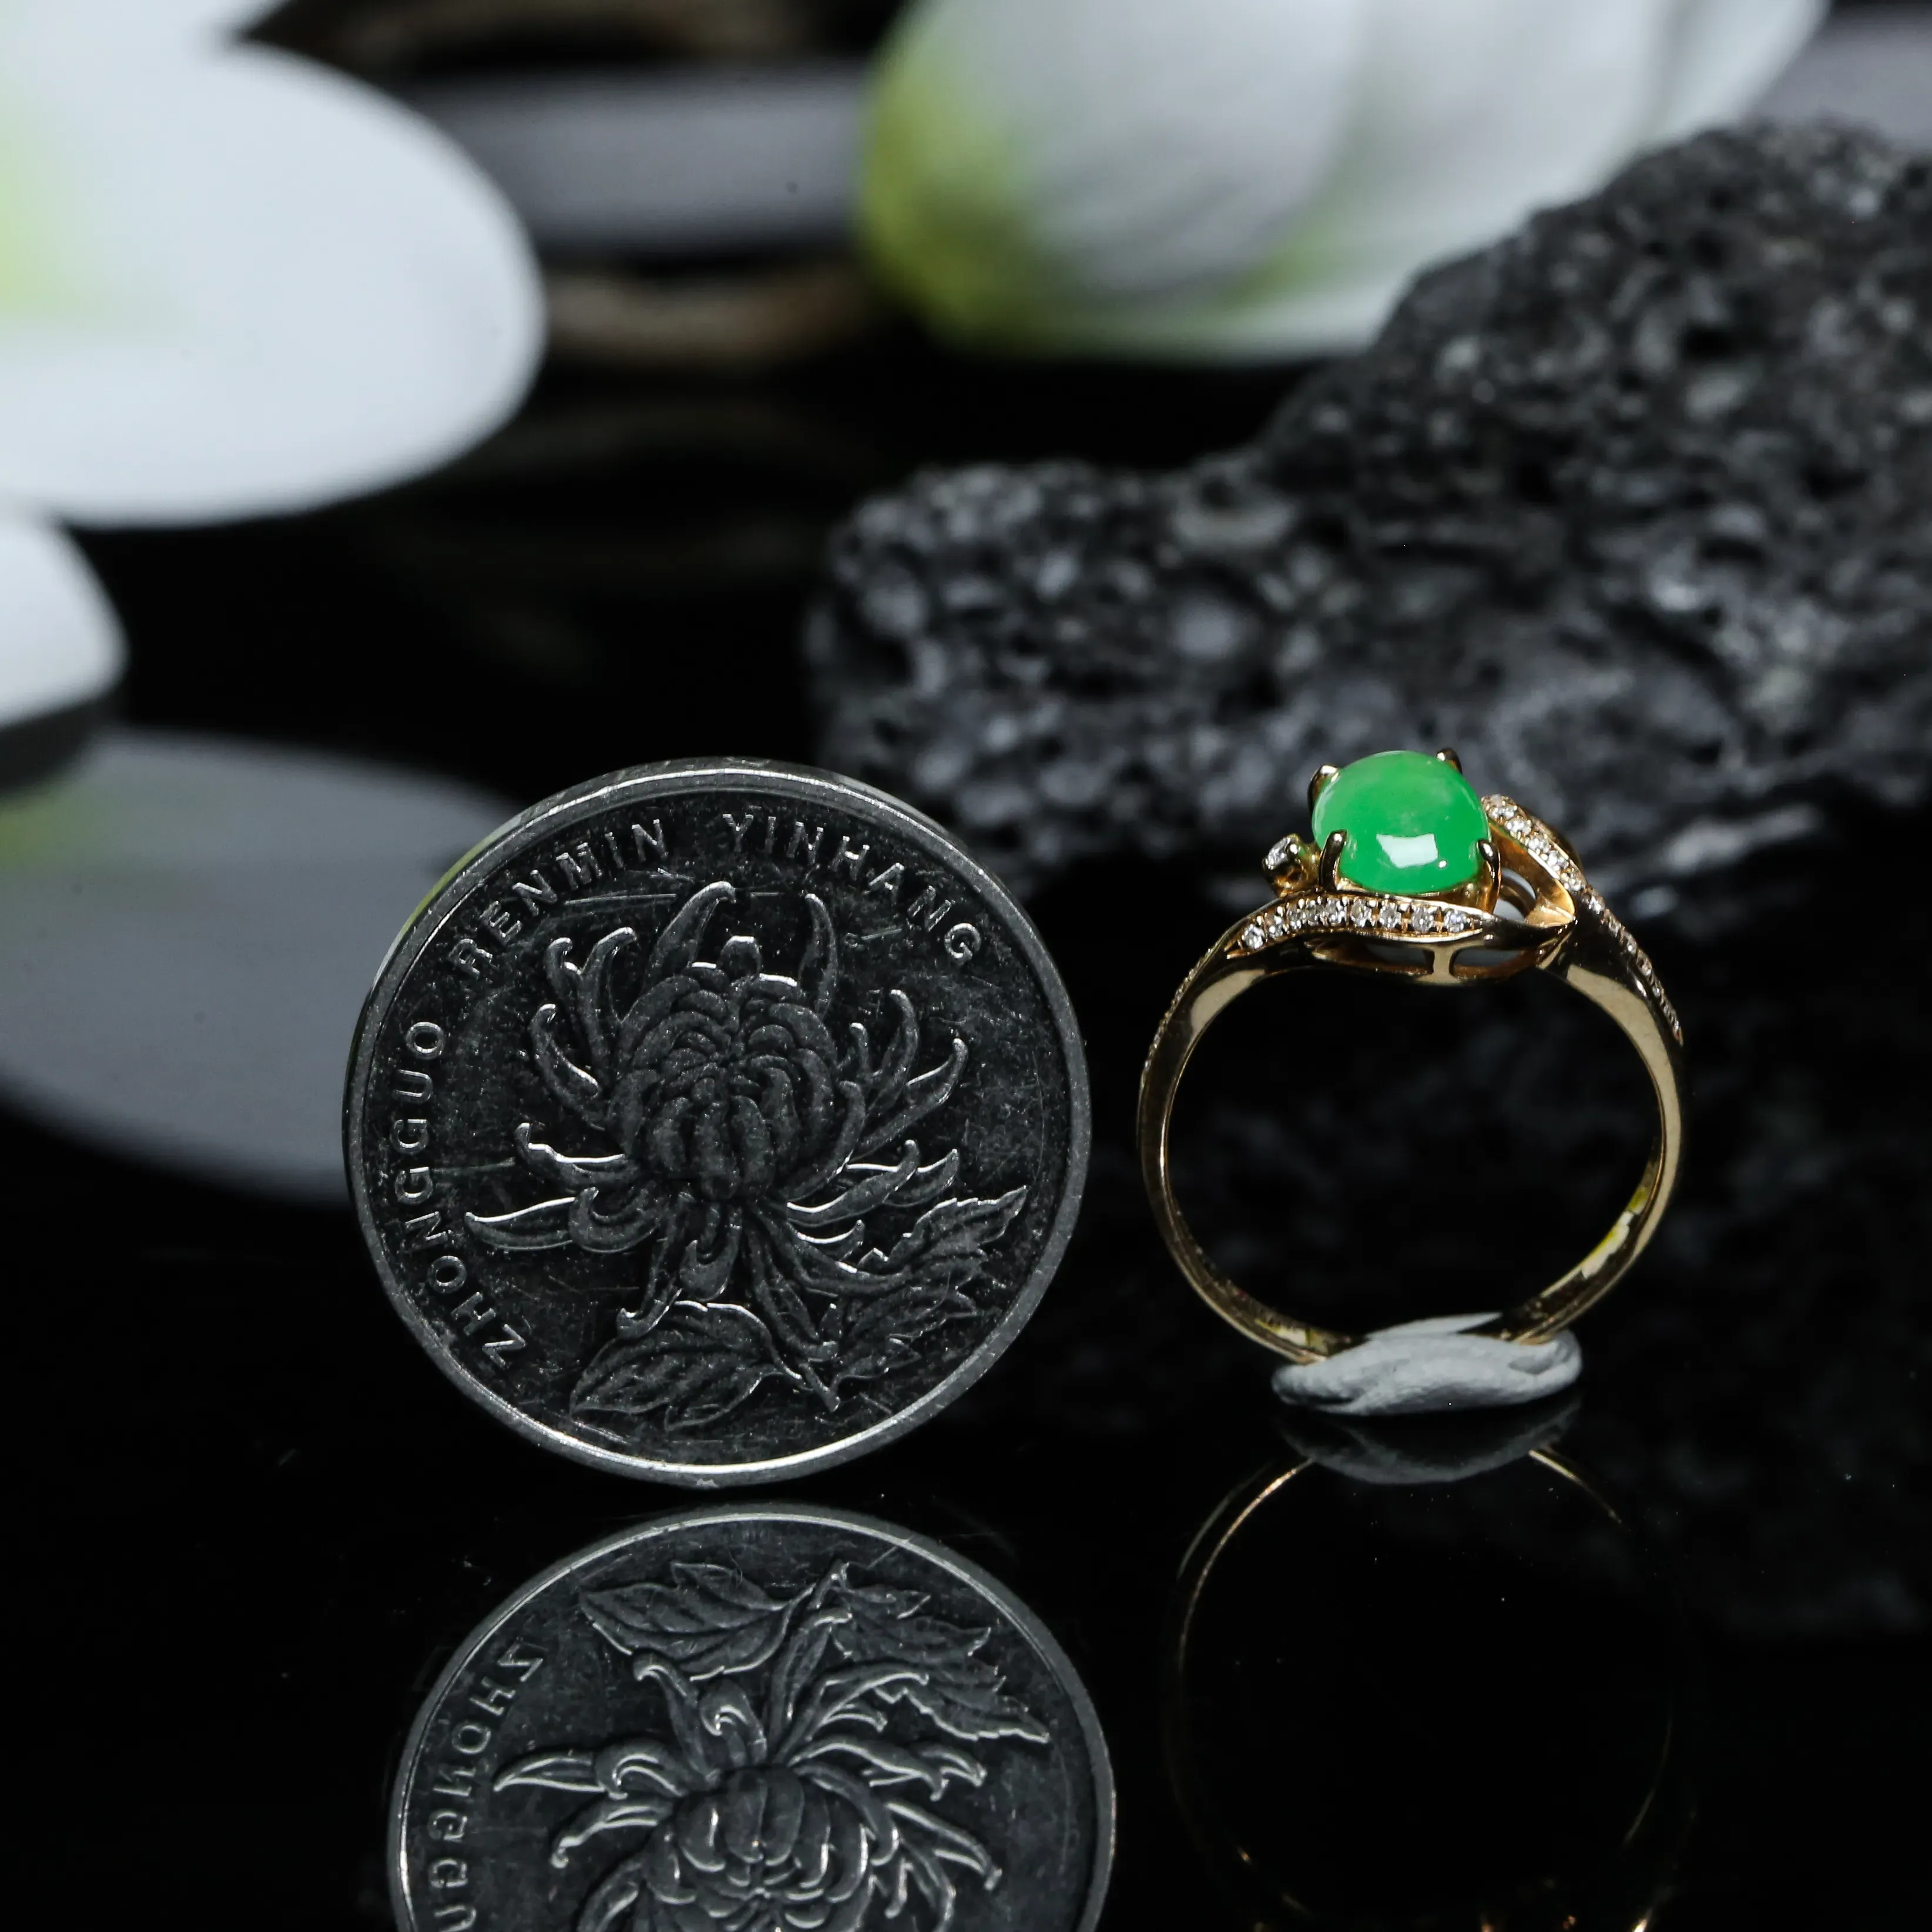 18K金镶嵌伴钻蛋面翡翠戒指，色泽清爽，质地细腻。上手效果时尚漂亮！尺寸16.8*9.3*5.7mm